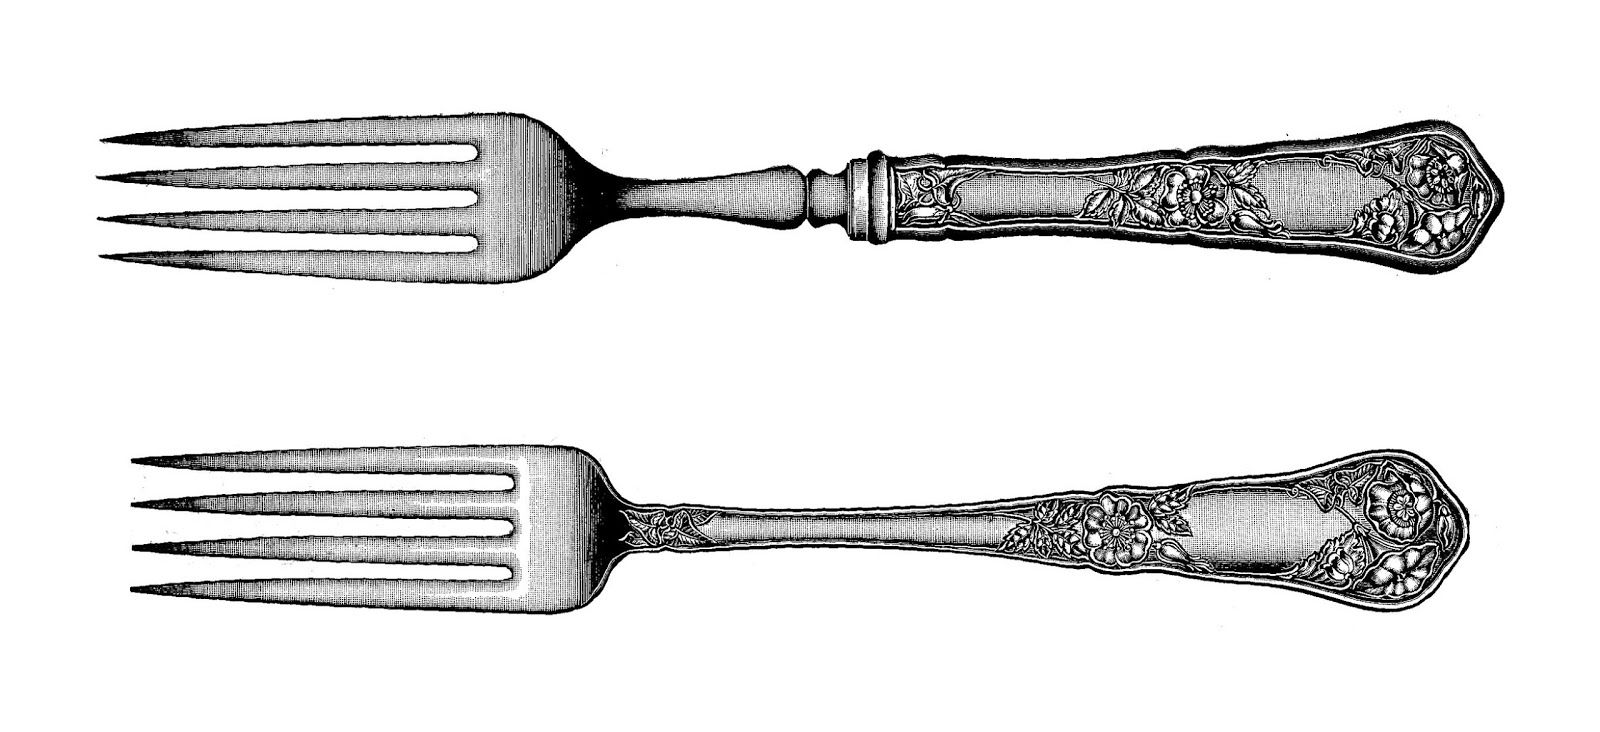 fork clipart antique fork